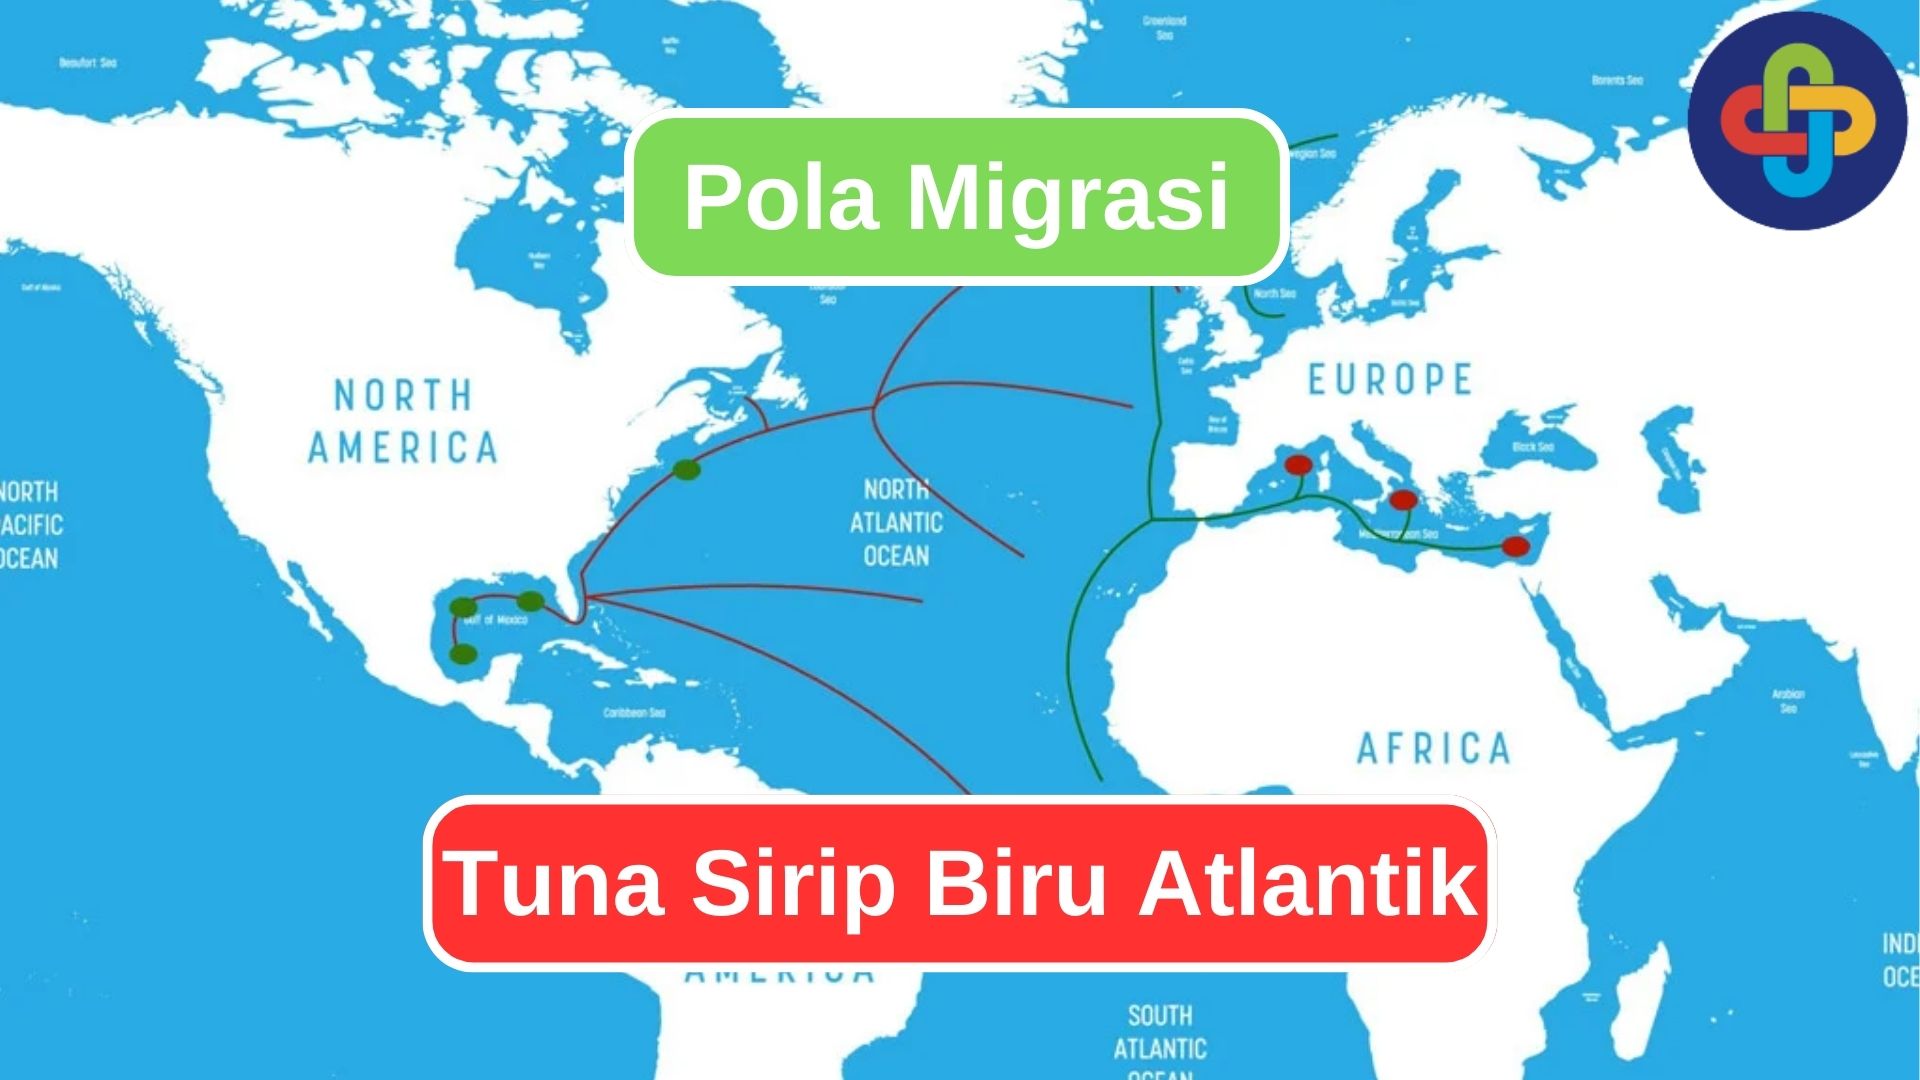 Mengikuti Migrasi Tahunan Tuna Sirip Biru Atlantik